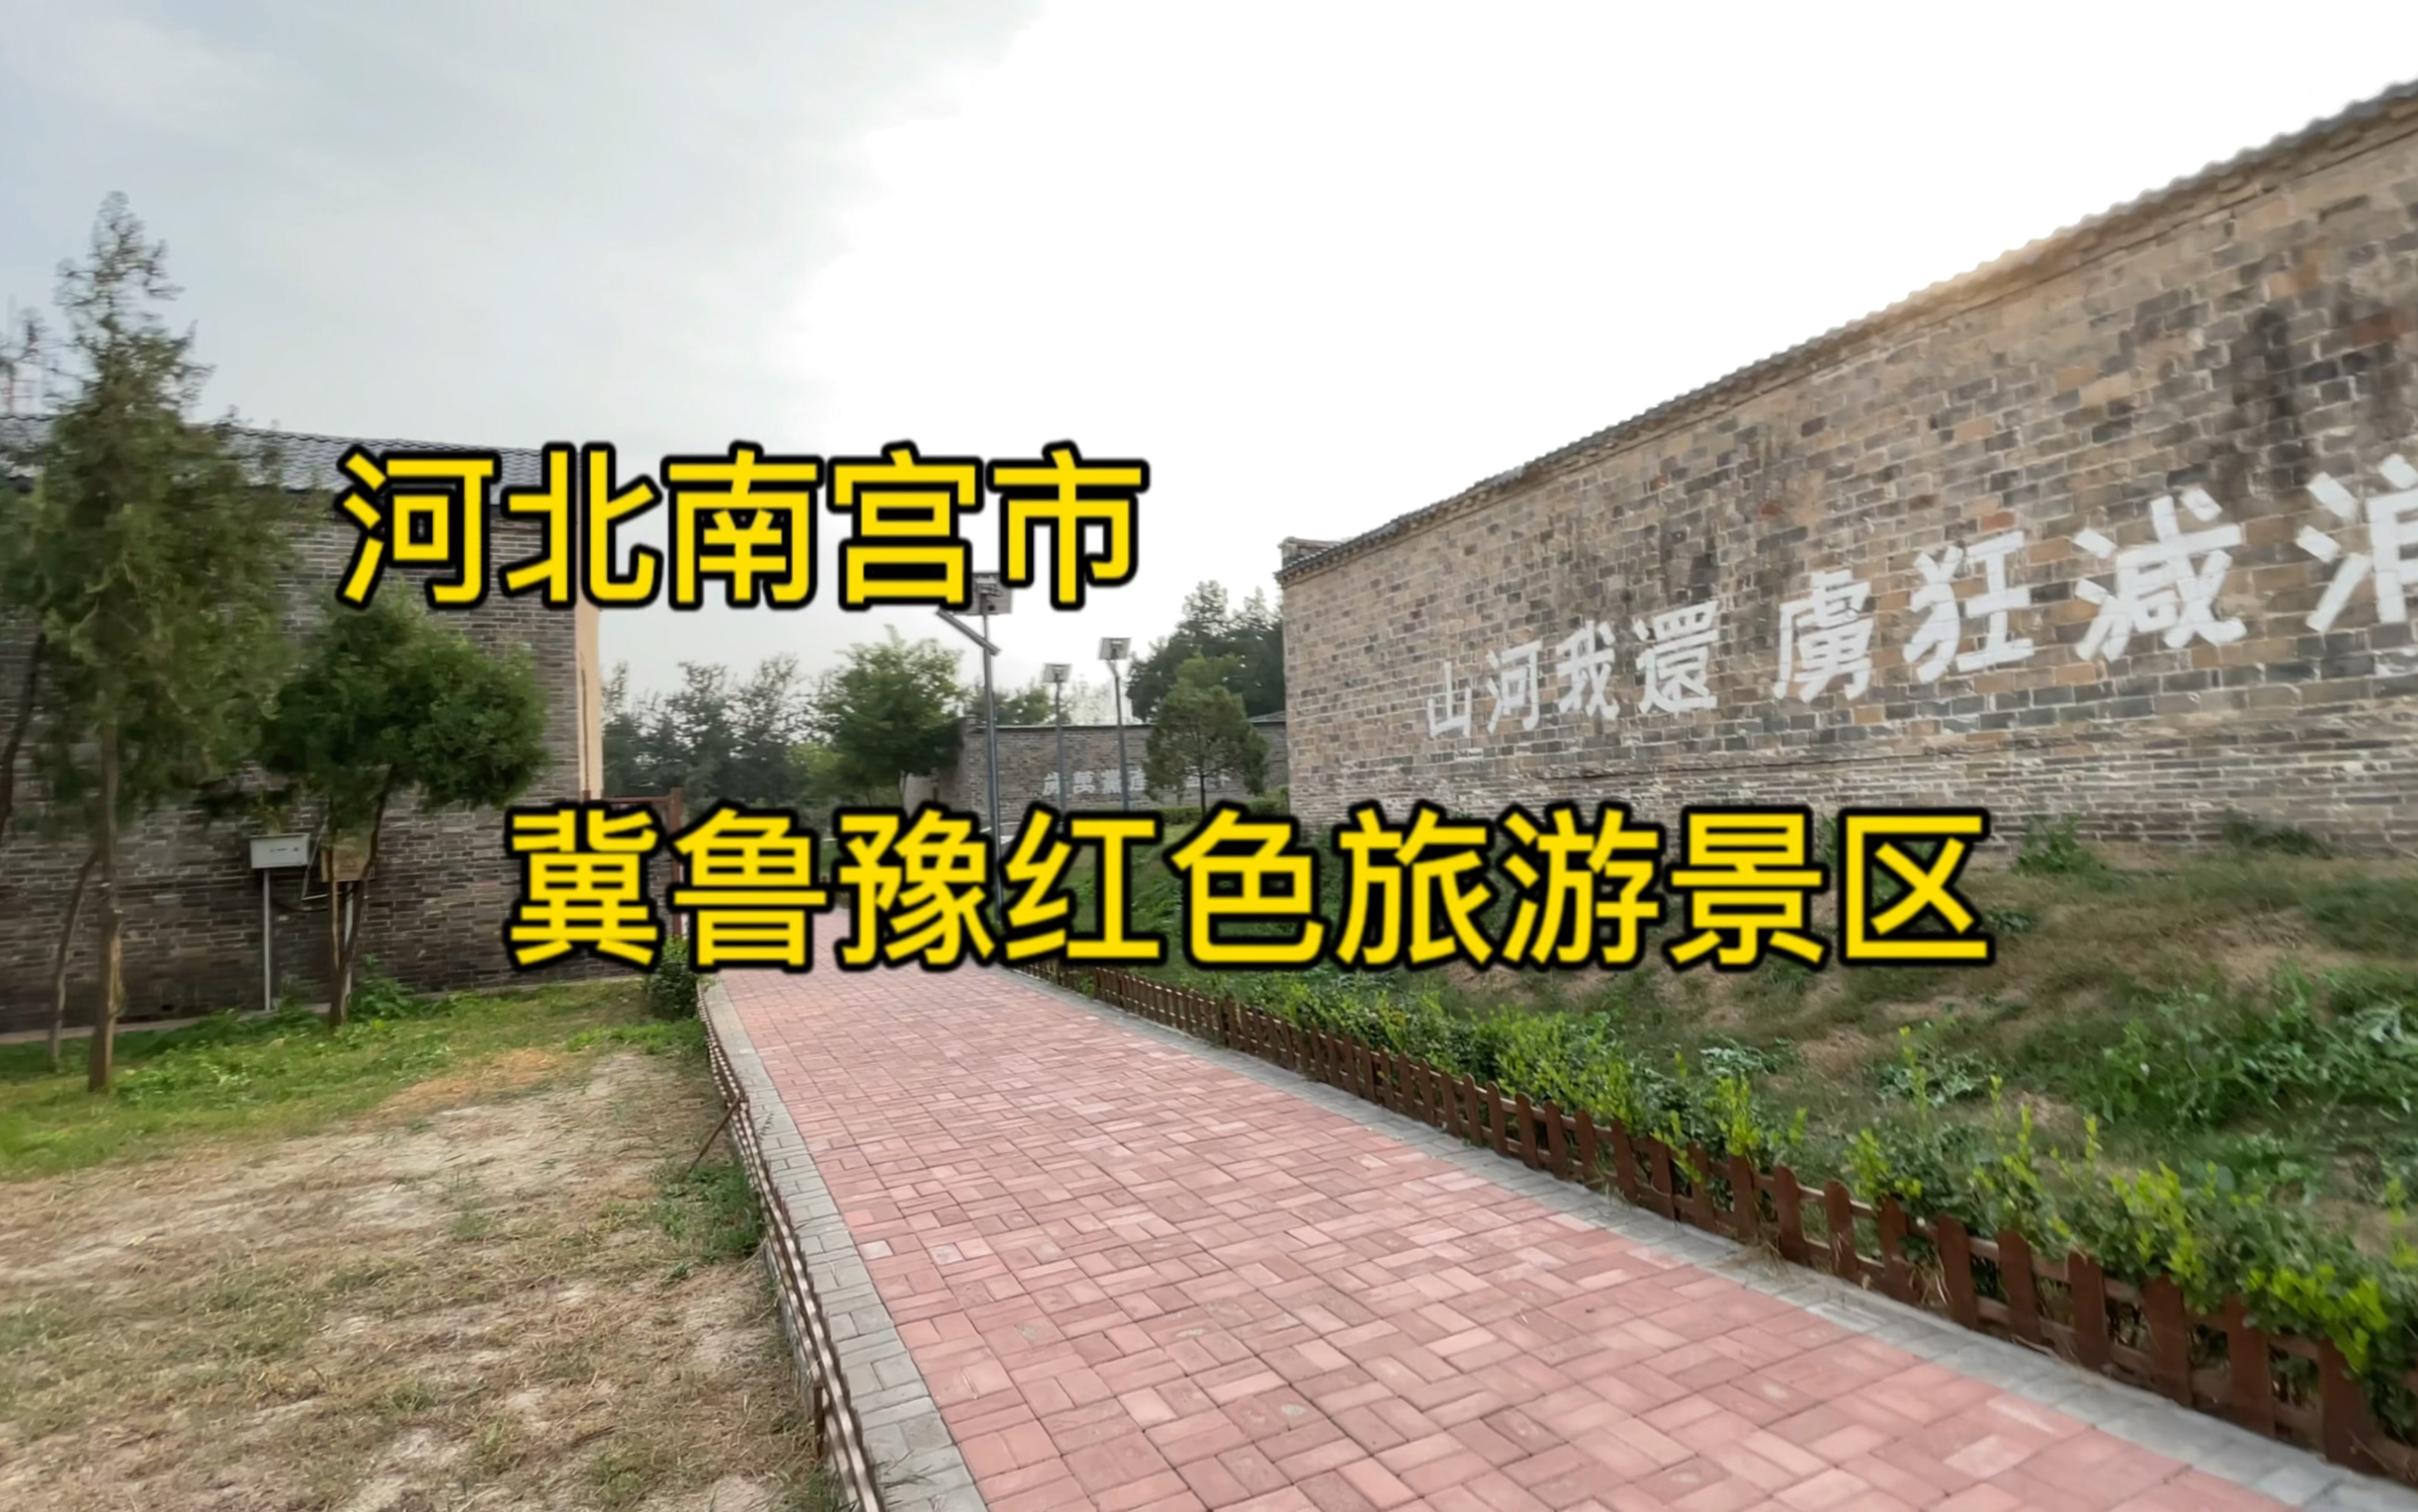 河北南宫市冀鲁豫红色旅游景区免费对外开放了，地址就在冀南烈士陵园里面